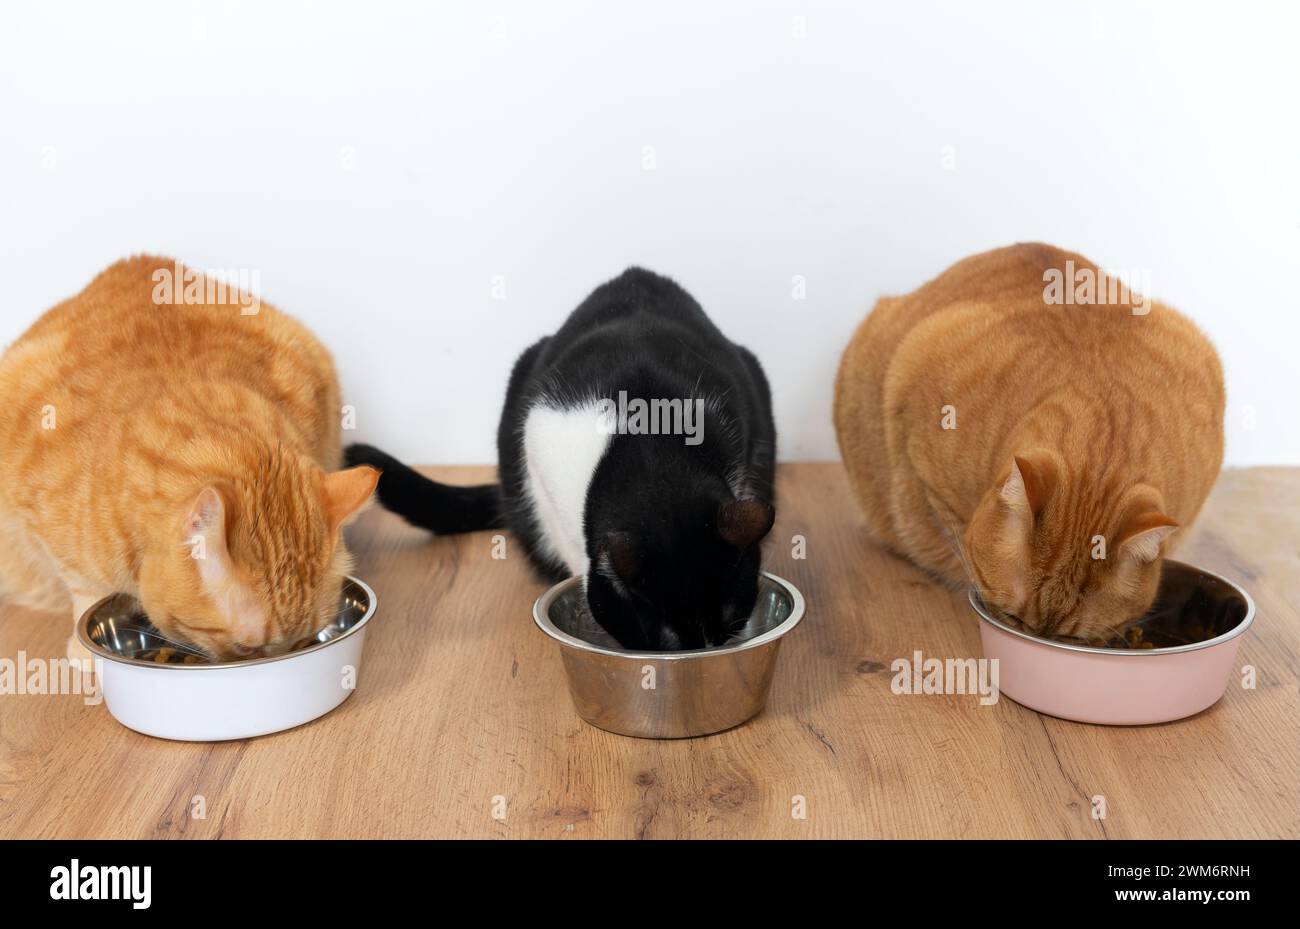 Drei Katzen, die aus Schüsseln essen - Haustiere Stockfoto